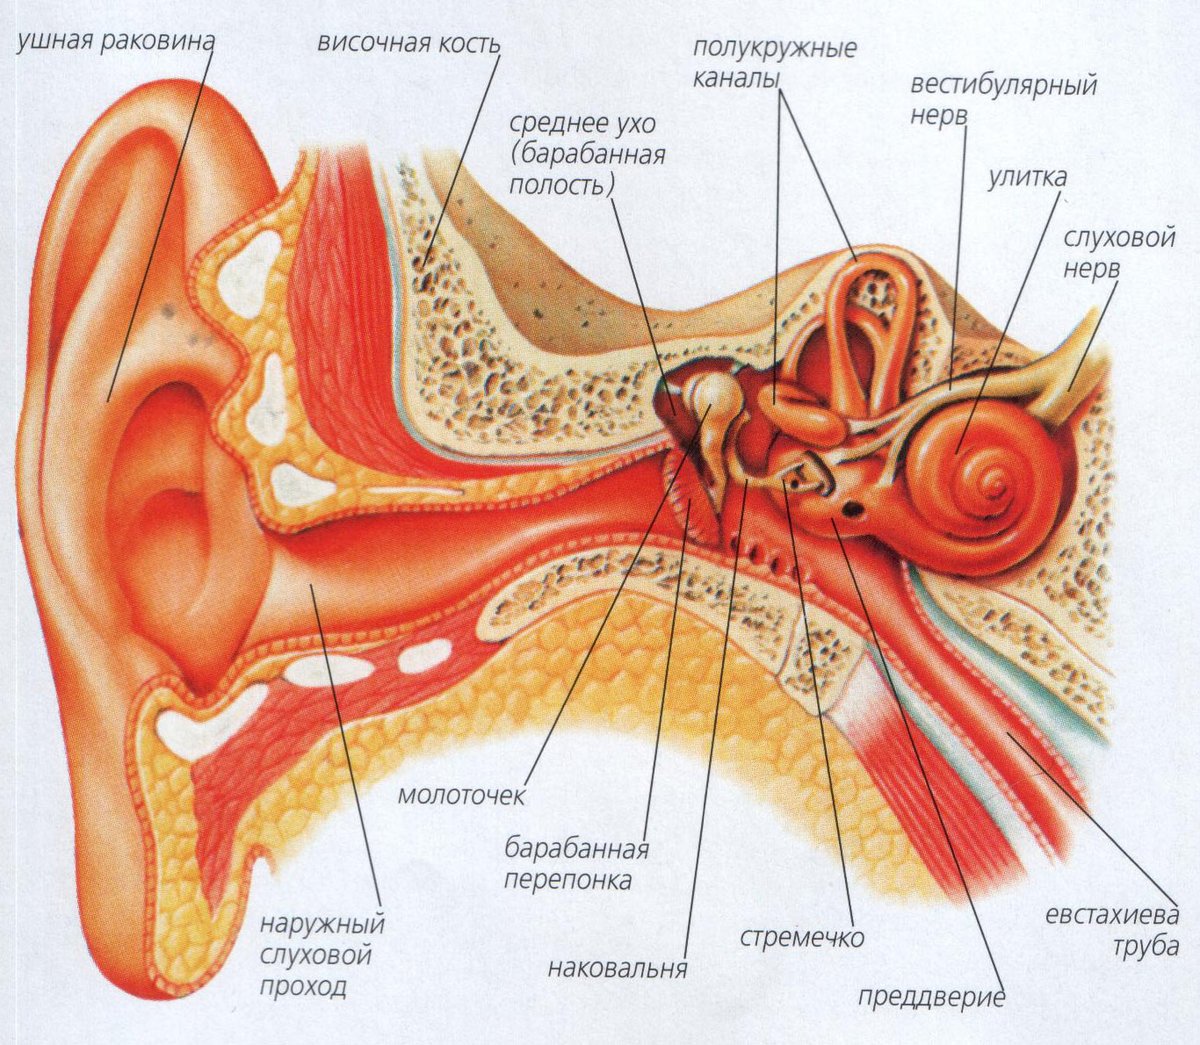 Орган слуха и вестибулярный аппарат. Орган слуха анатомия уха строение. Вестибулярный аппарат внутреннего уха строение. Строение уха и вестибулярного аппарата. Орган слуха наружное ухо среднее ухо внутреннее ухо.